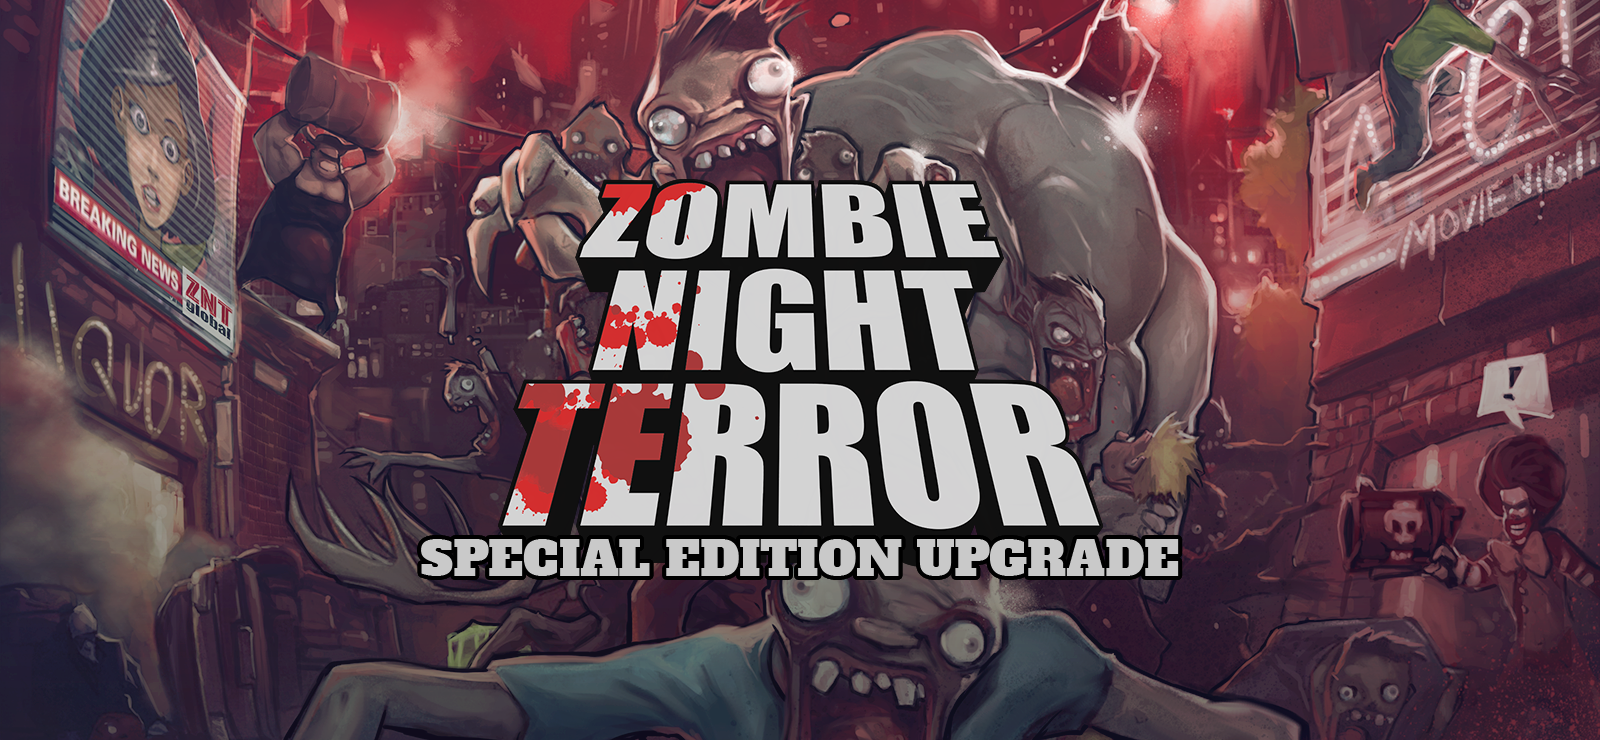 Zombie Night Terror Special Edition Upgrade